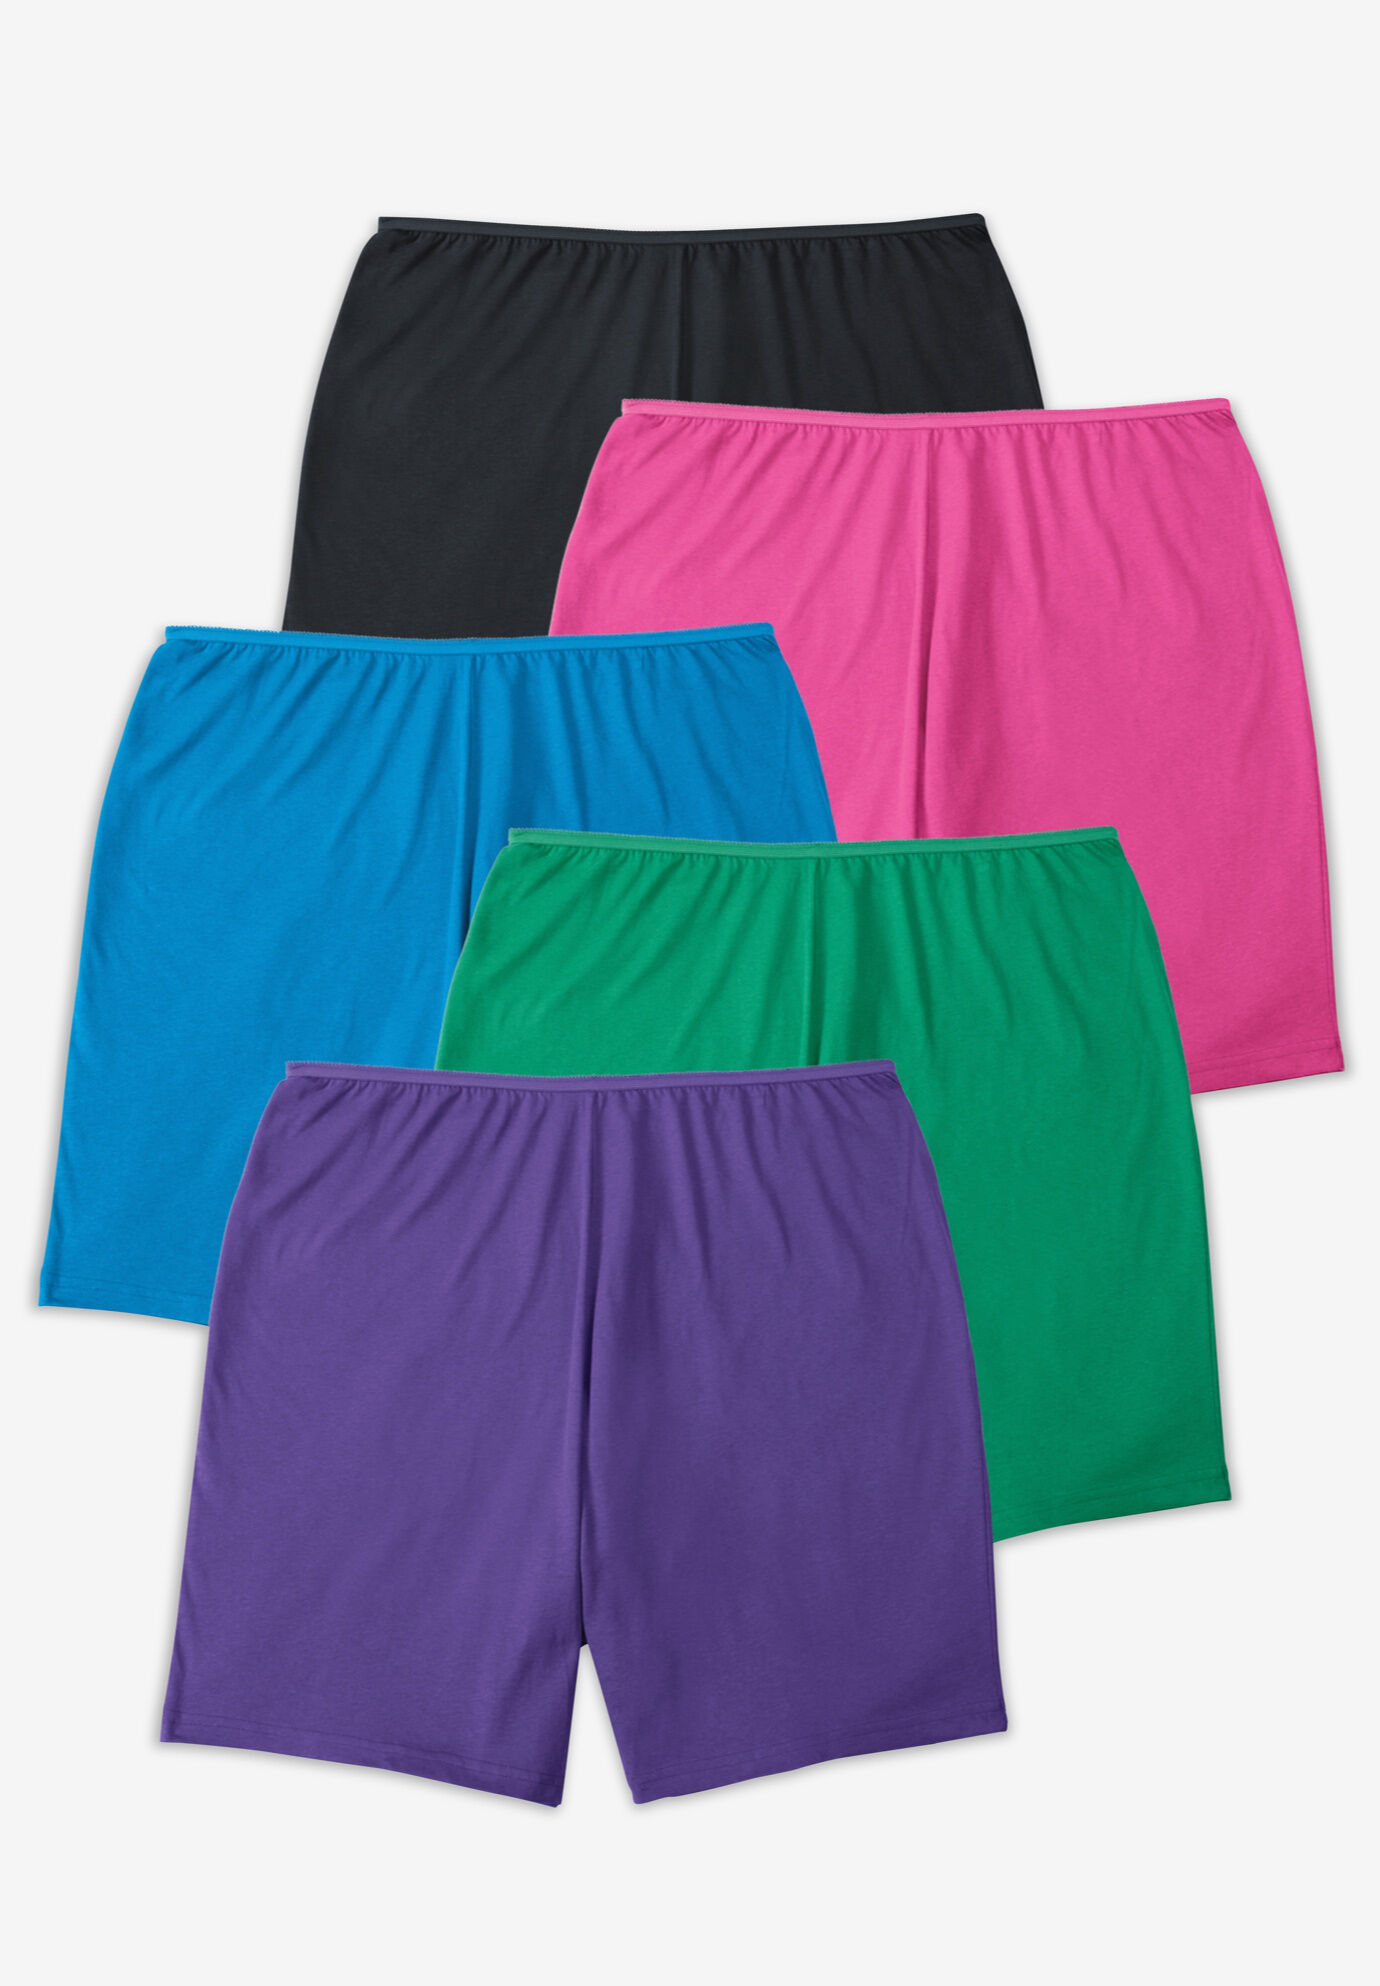 5 PACK Ladies Womans Underwear Briefs Boy Shorts purple Knickers 8 10 12 14 16 